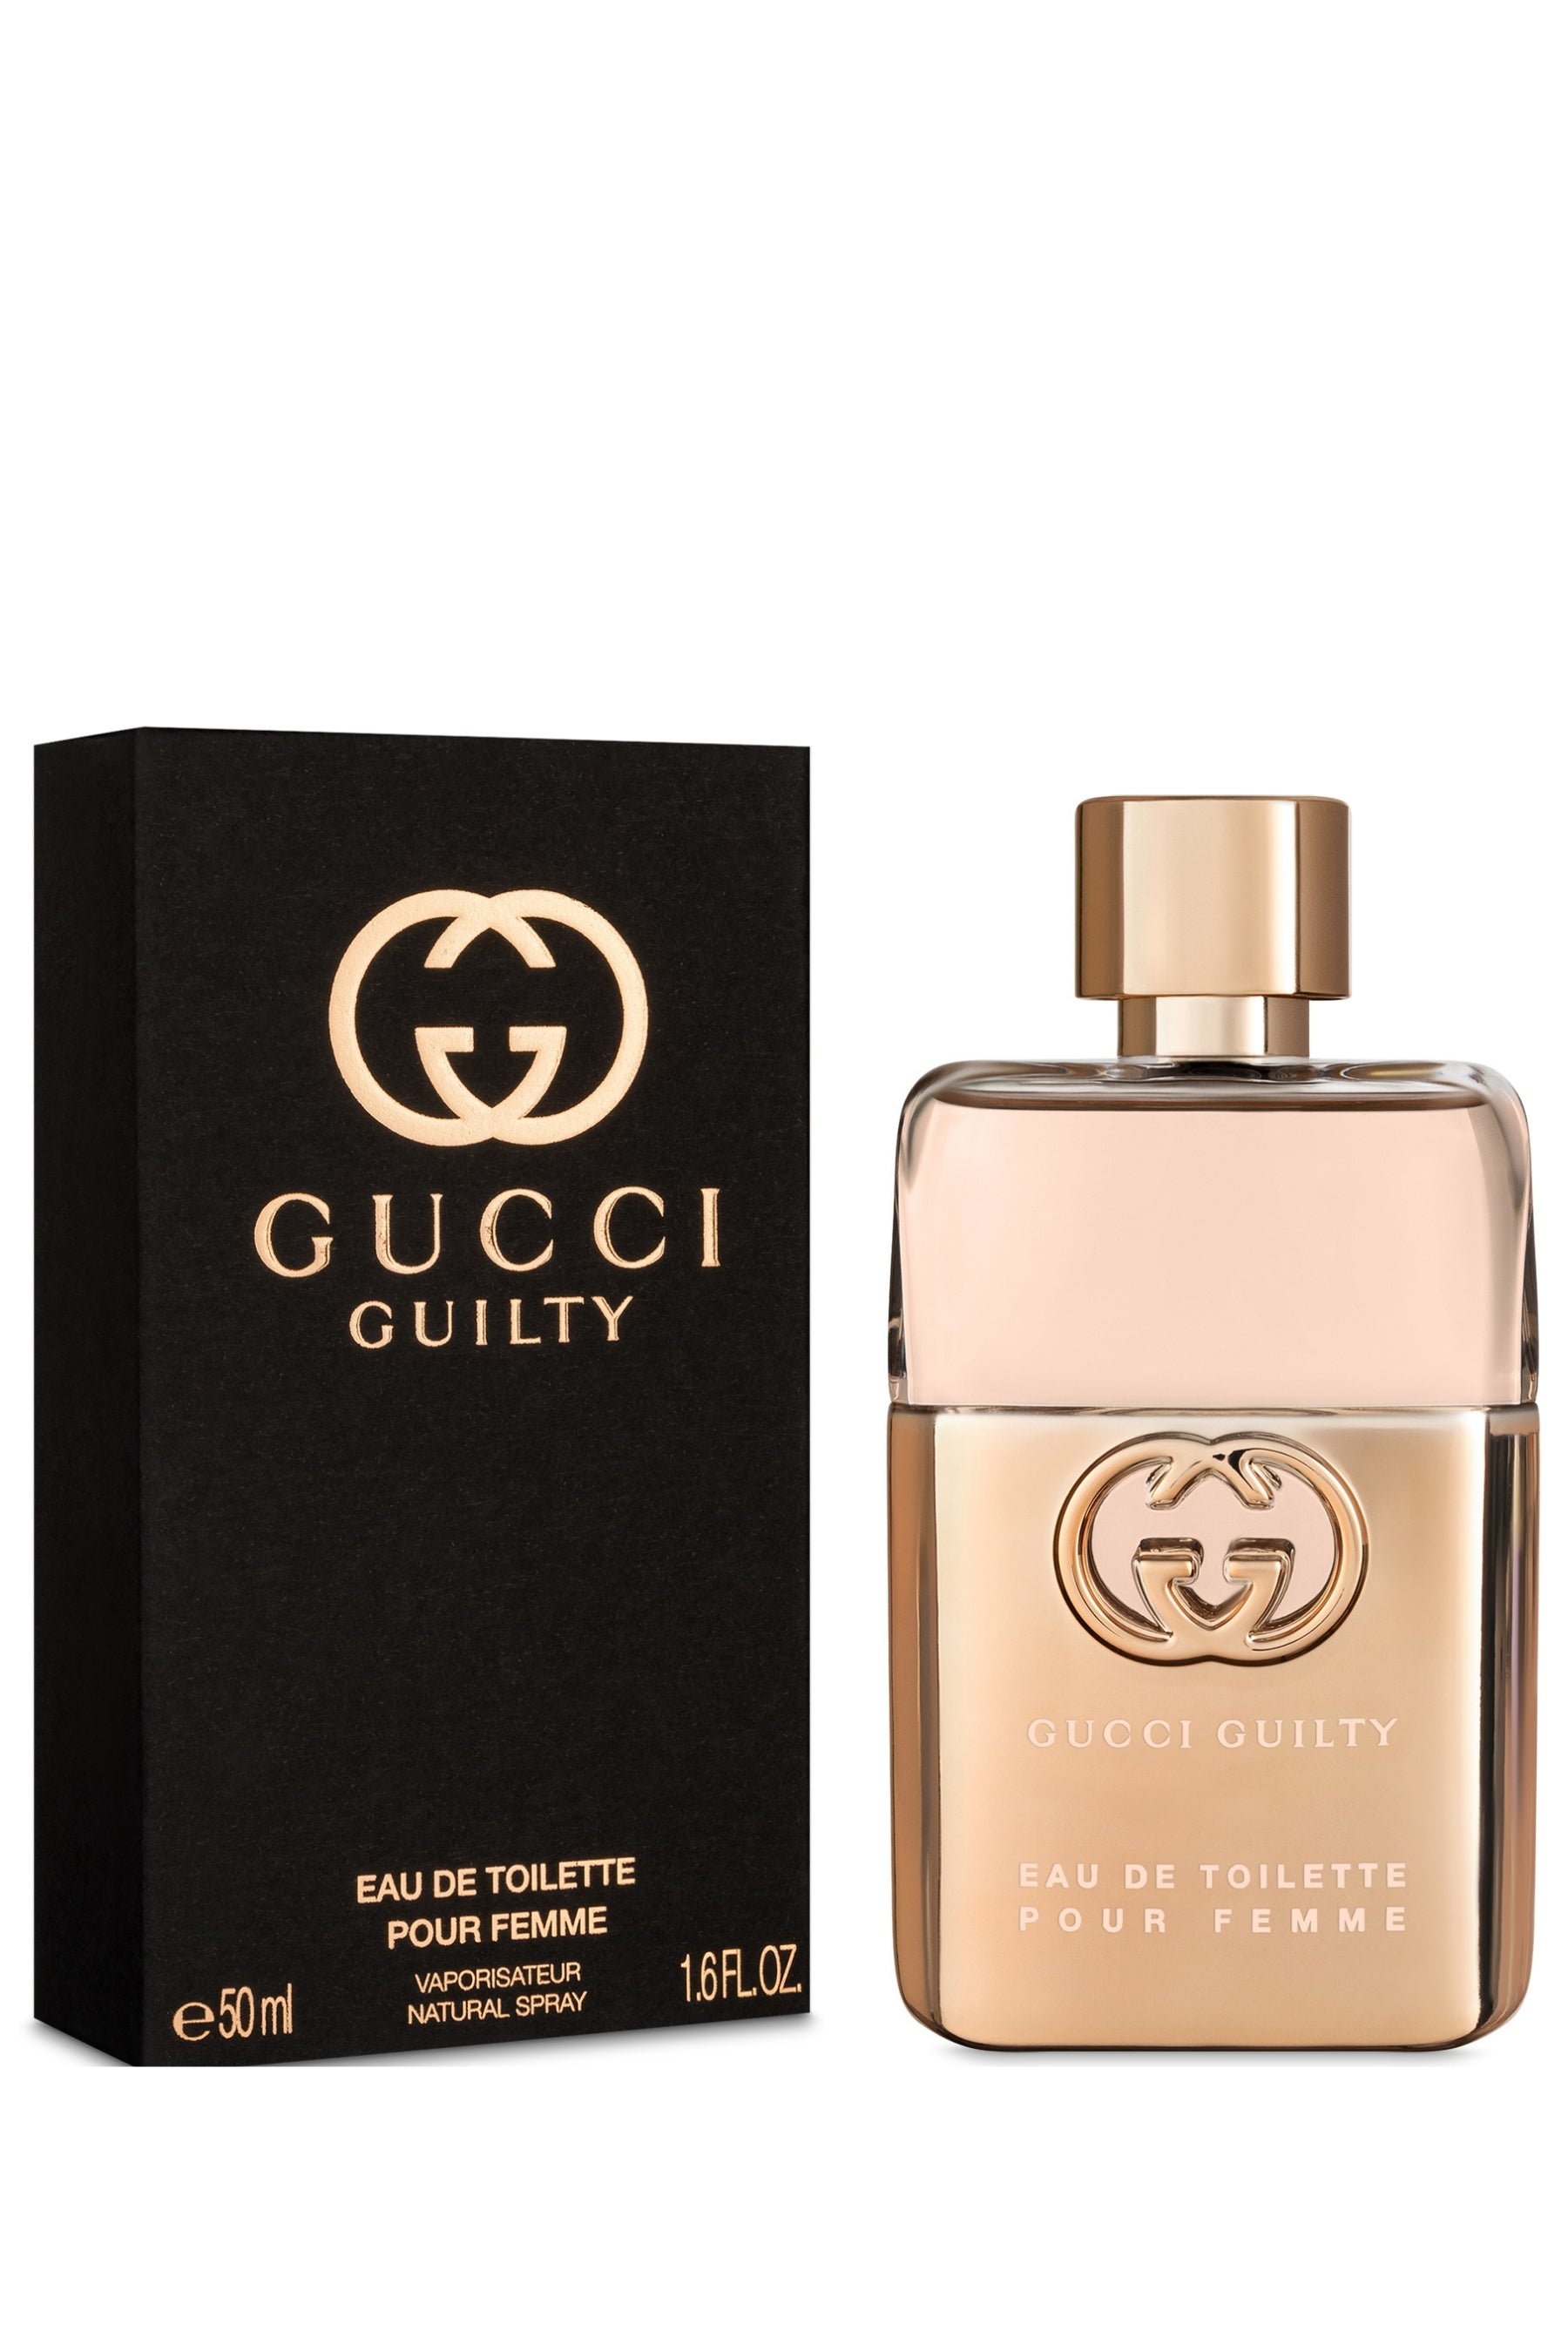 Gucci | Guilty Eau de Toilette (New Packaging)